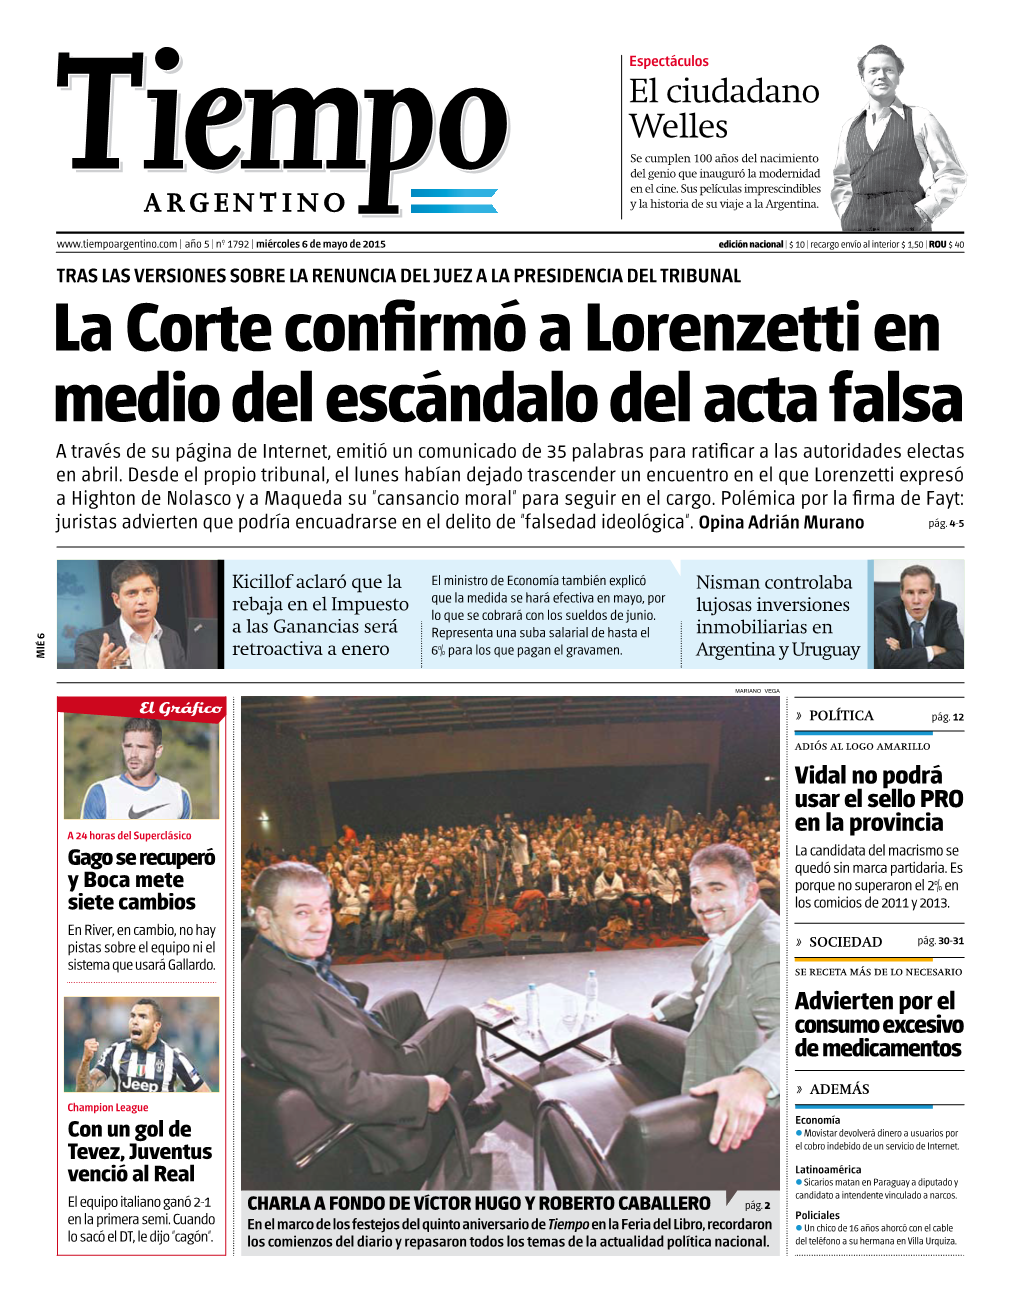 La Corte Confirmó a Lorenzetti En Medio Del Escándalo Del Acta Falsa